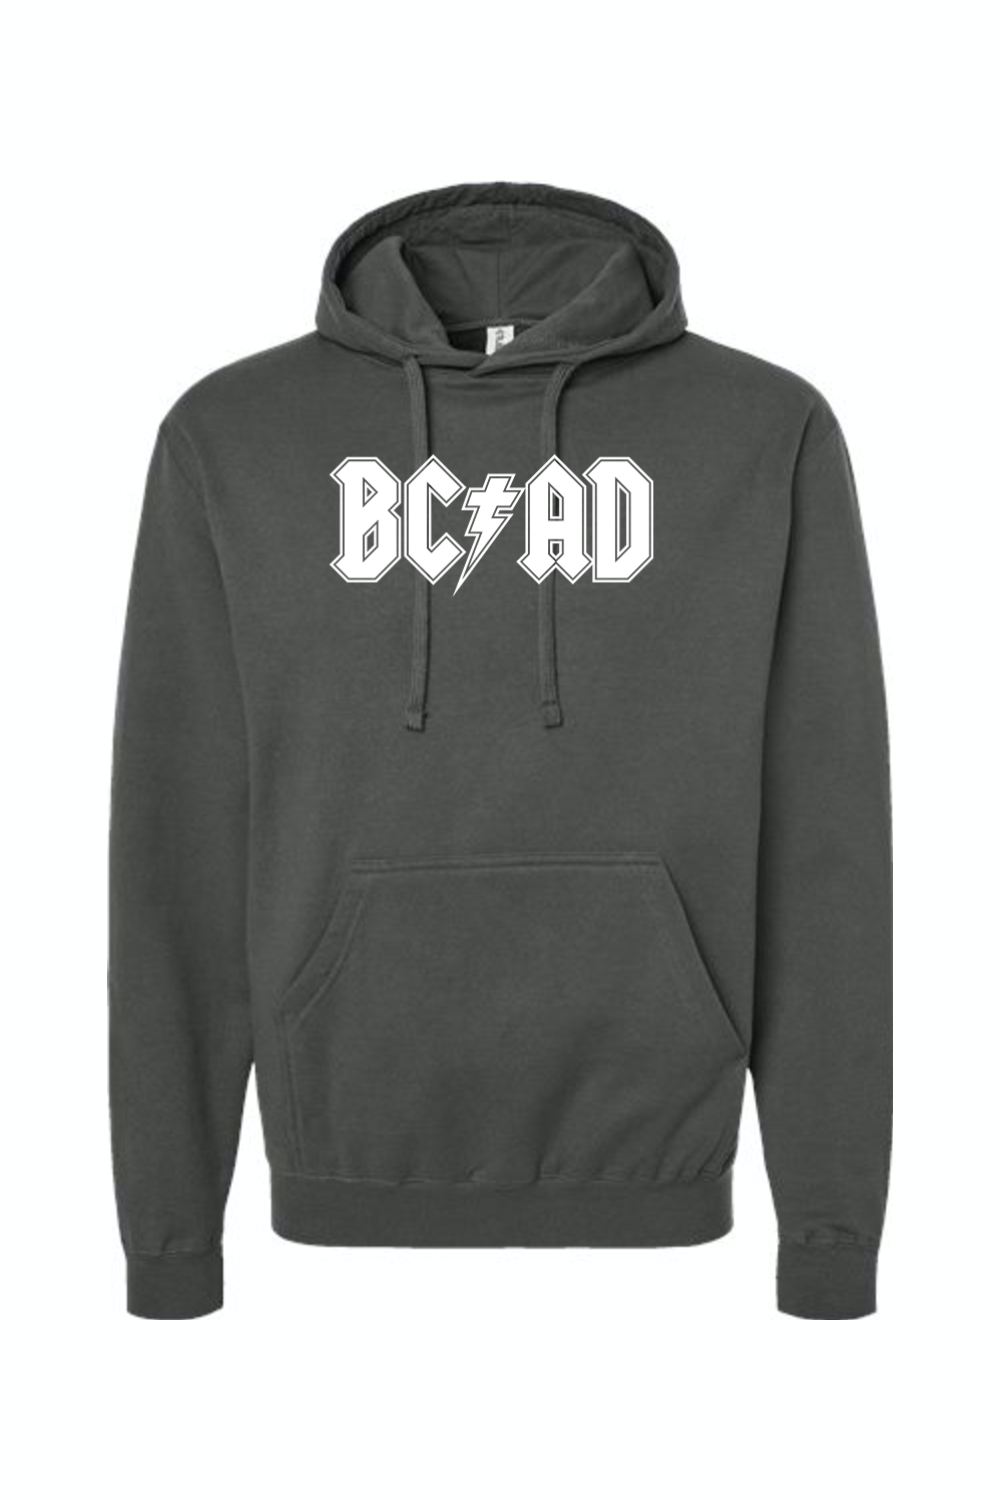 BCAD - Hoodie Sweatshirt